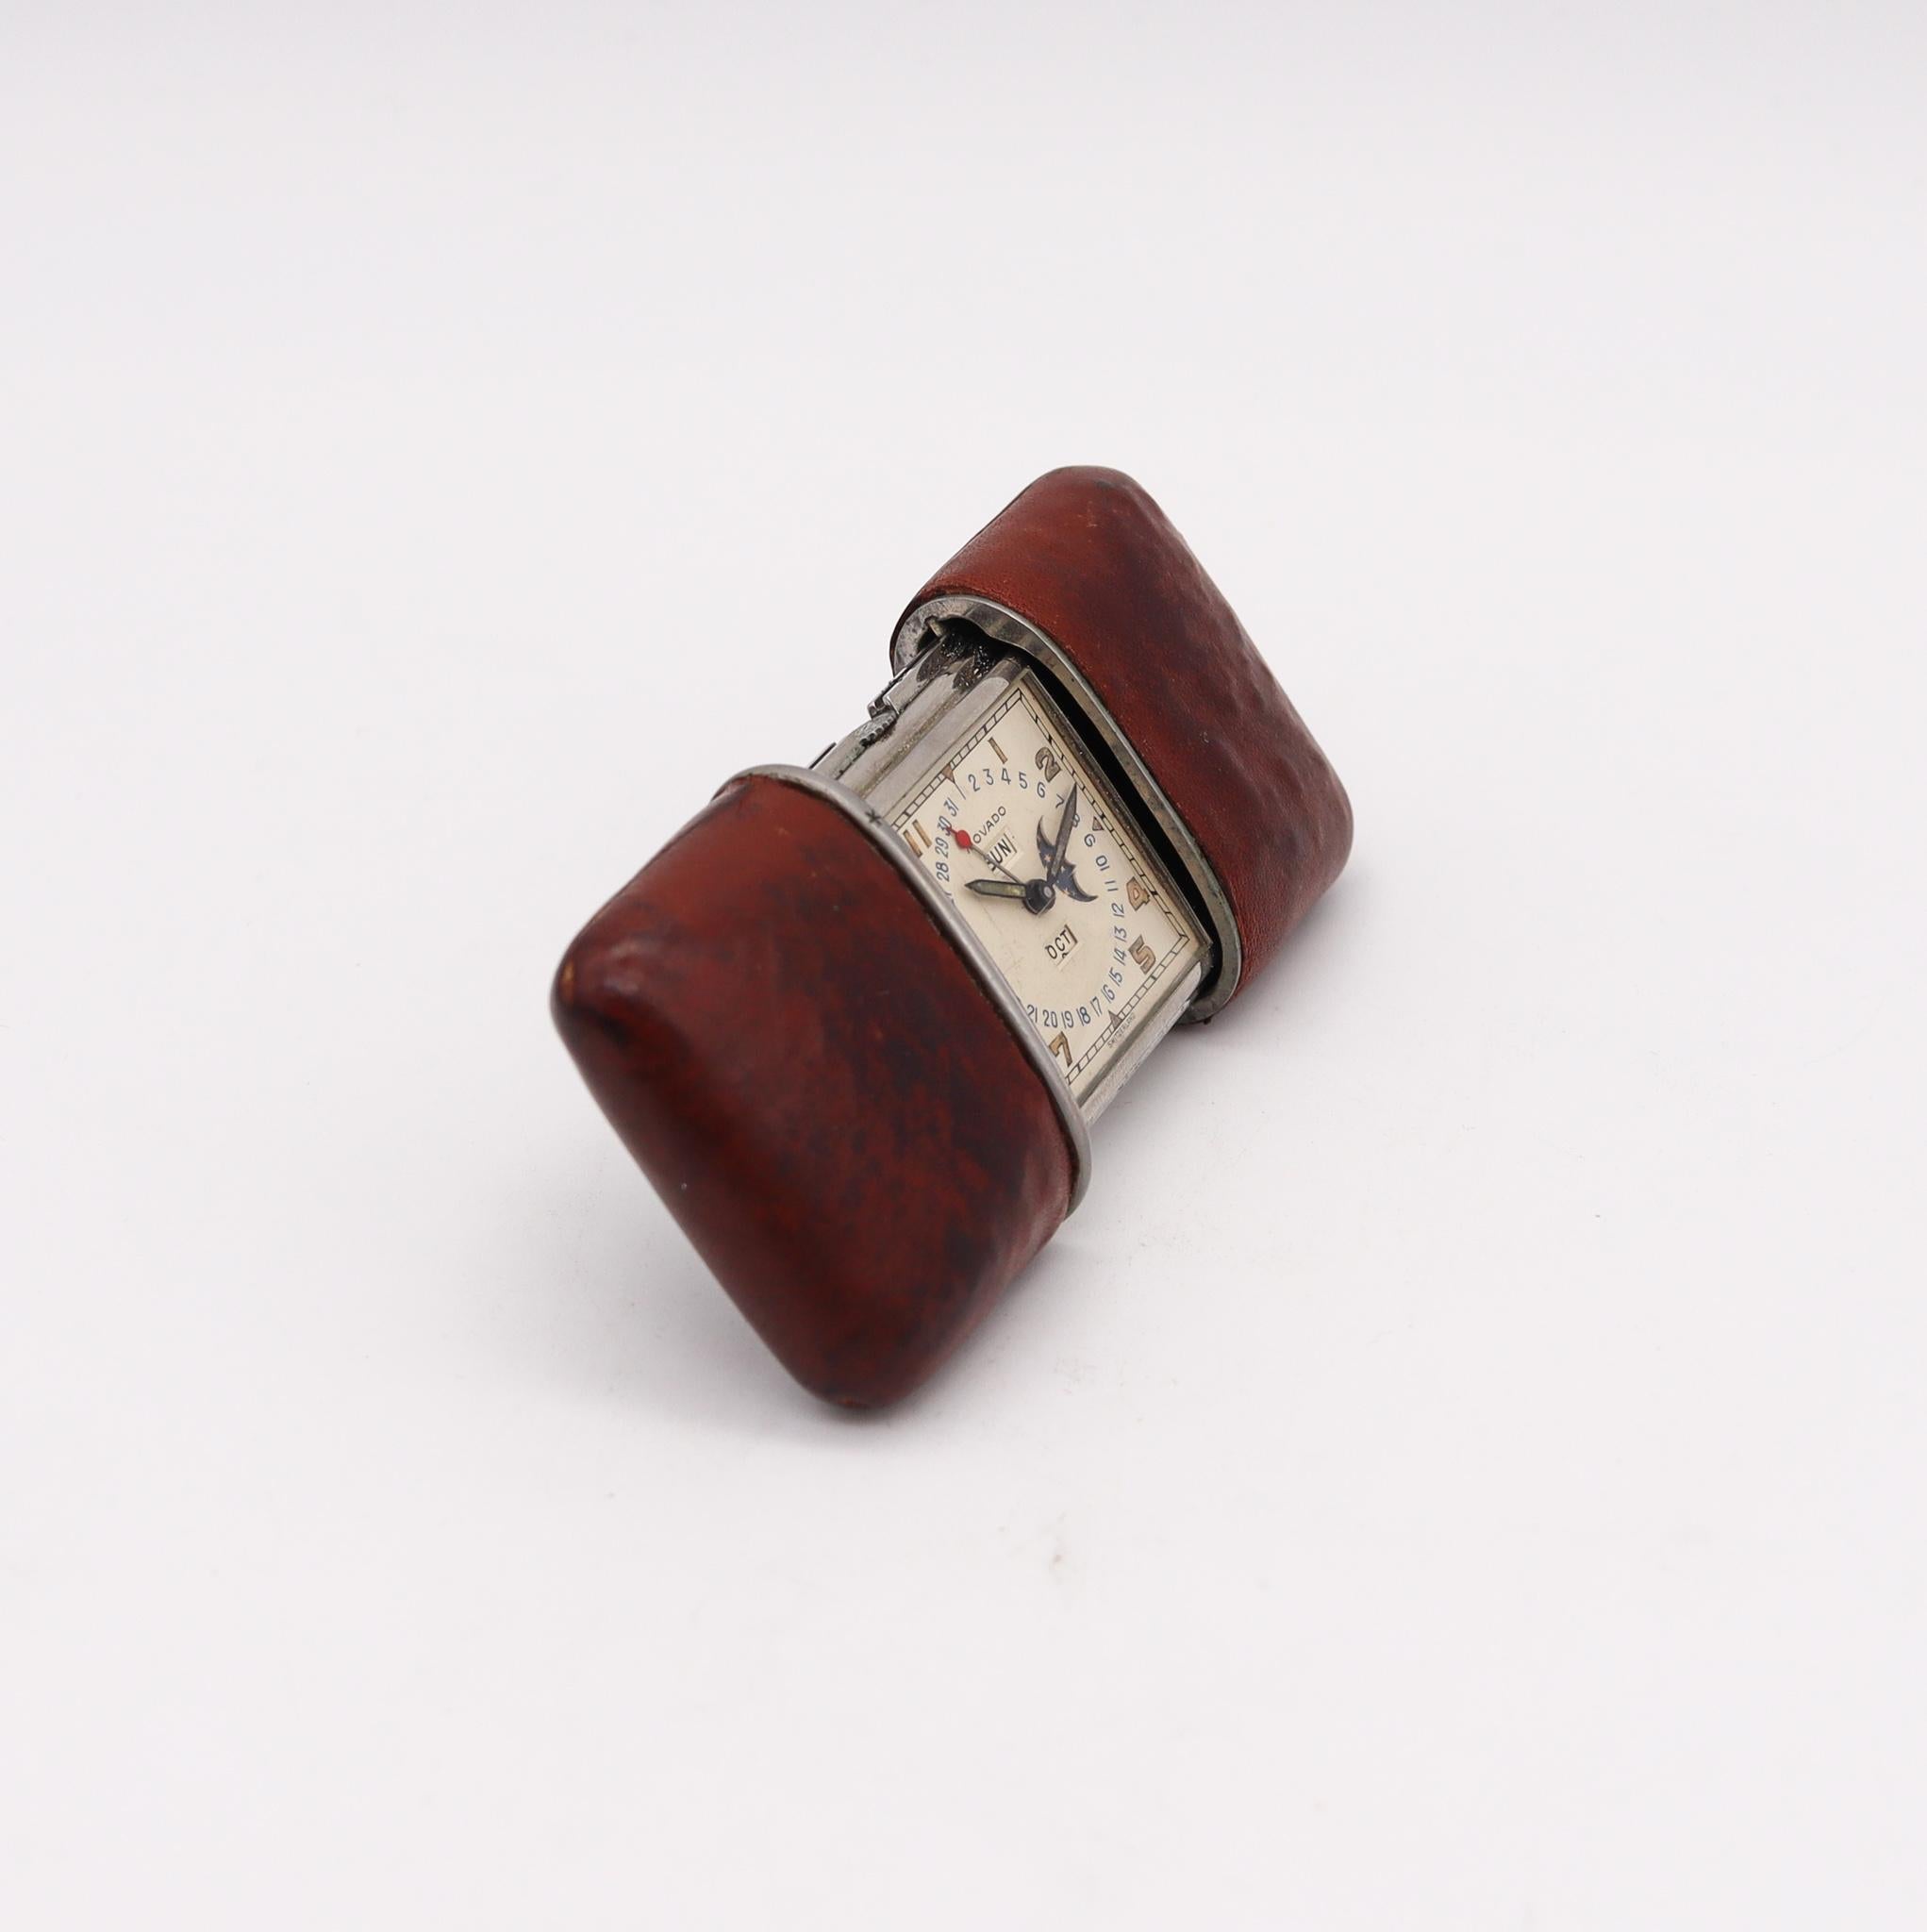 Seltene Kalendermeto-Reiseuhr von Movado.

Schöne und sehr seltene kalendermeto Reisetaschenuhr, die in der Schweiz von der Movado Clock Factories, zurück in den 1948-1954. Hergestellt aus rostfreiem Stahl und Leder mit dem Zweck, in Schreibtischen,